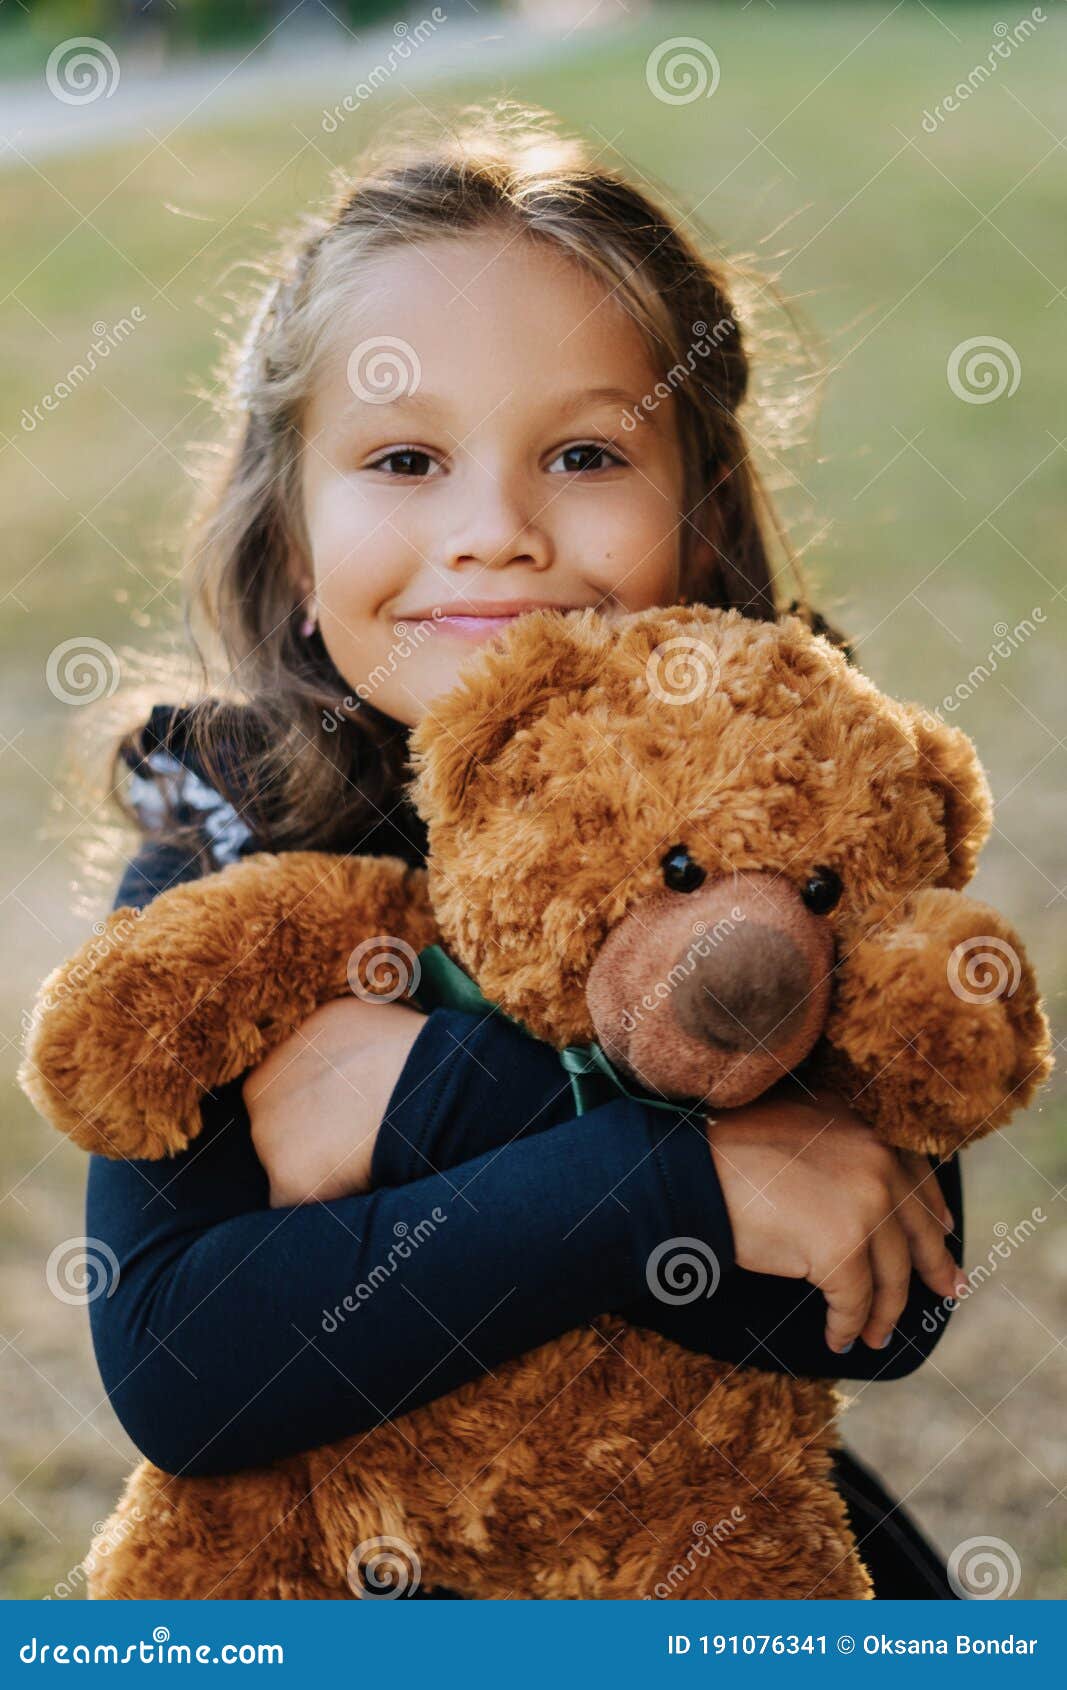 新款泰迪熊公仔 田园风情侣泰迪熊婚庆压床娃娃一对-阿里巴巴